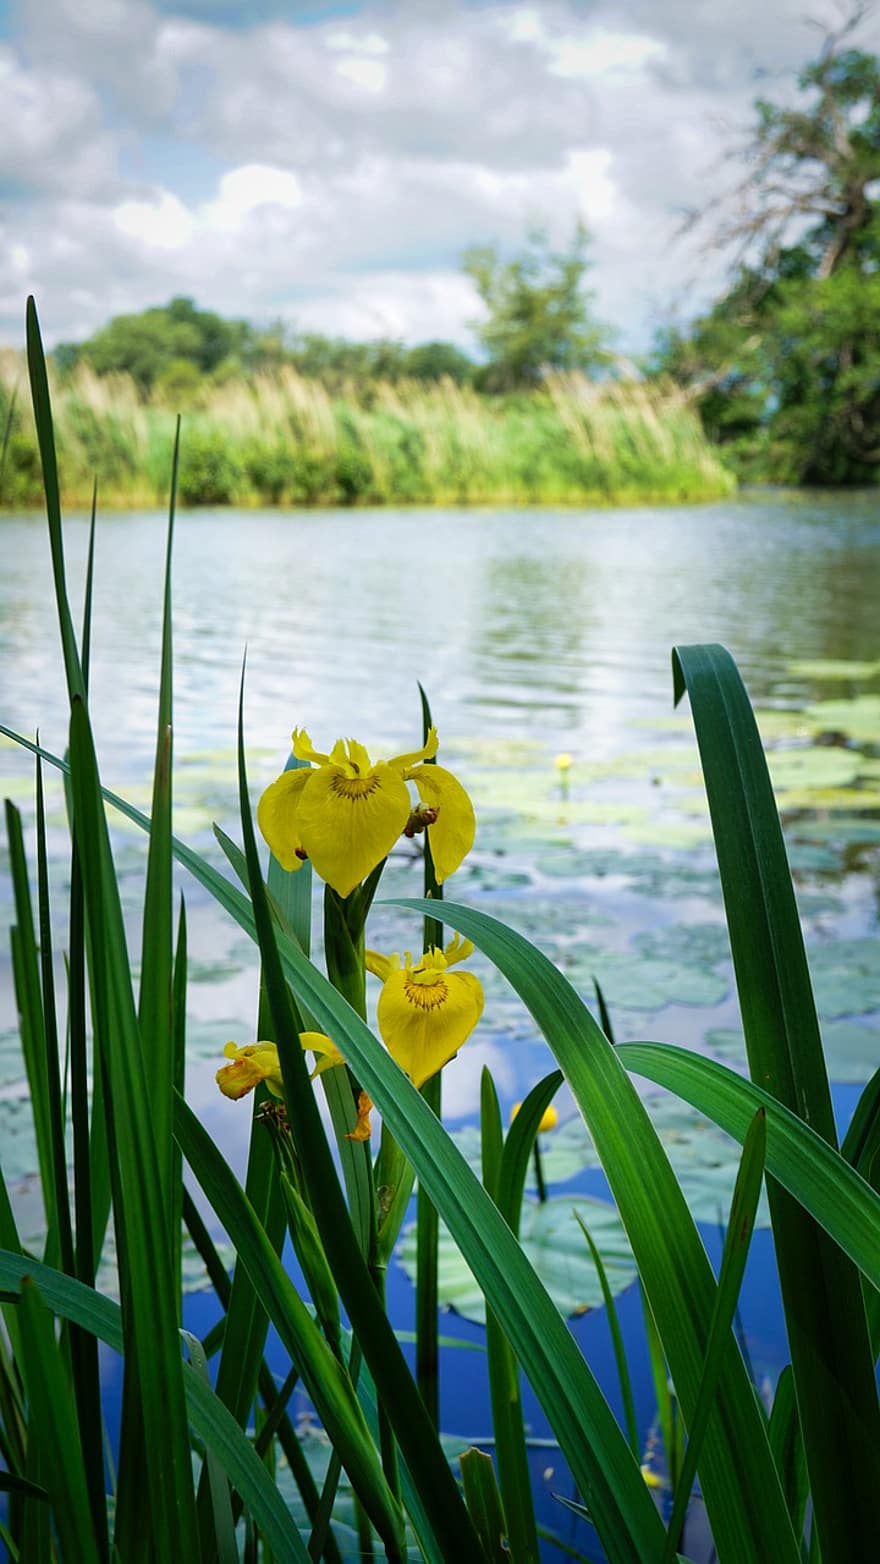 keltainen iiris, lampi, kukat, keltaiset kukat, luonto, järvi, kukka, vihreä väri, kesä, kasvi, keltainen